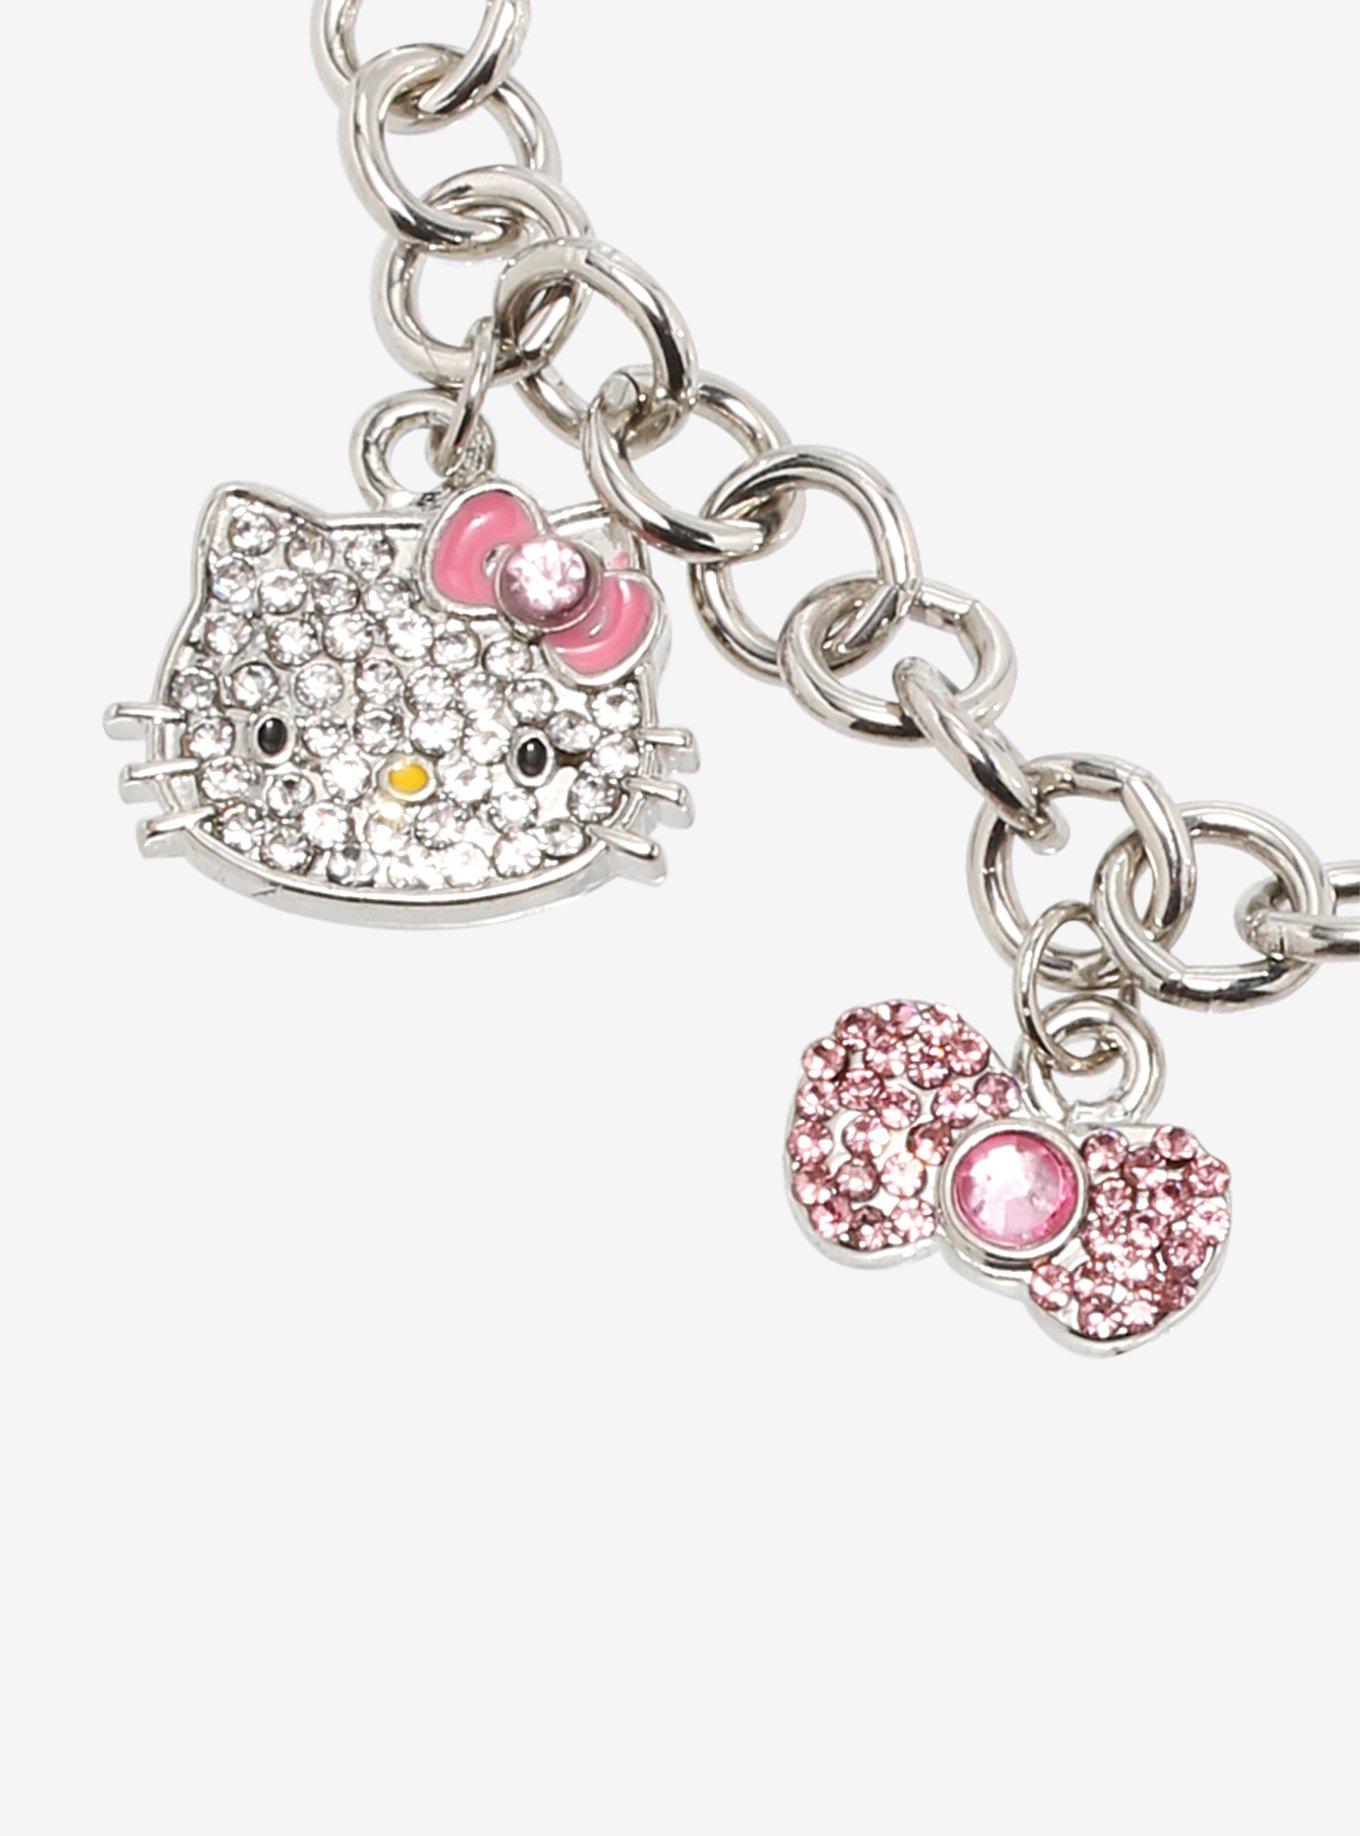 Hello Kitty Bling Charm Bracelet, , alternate